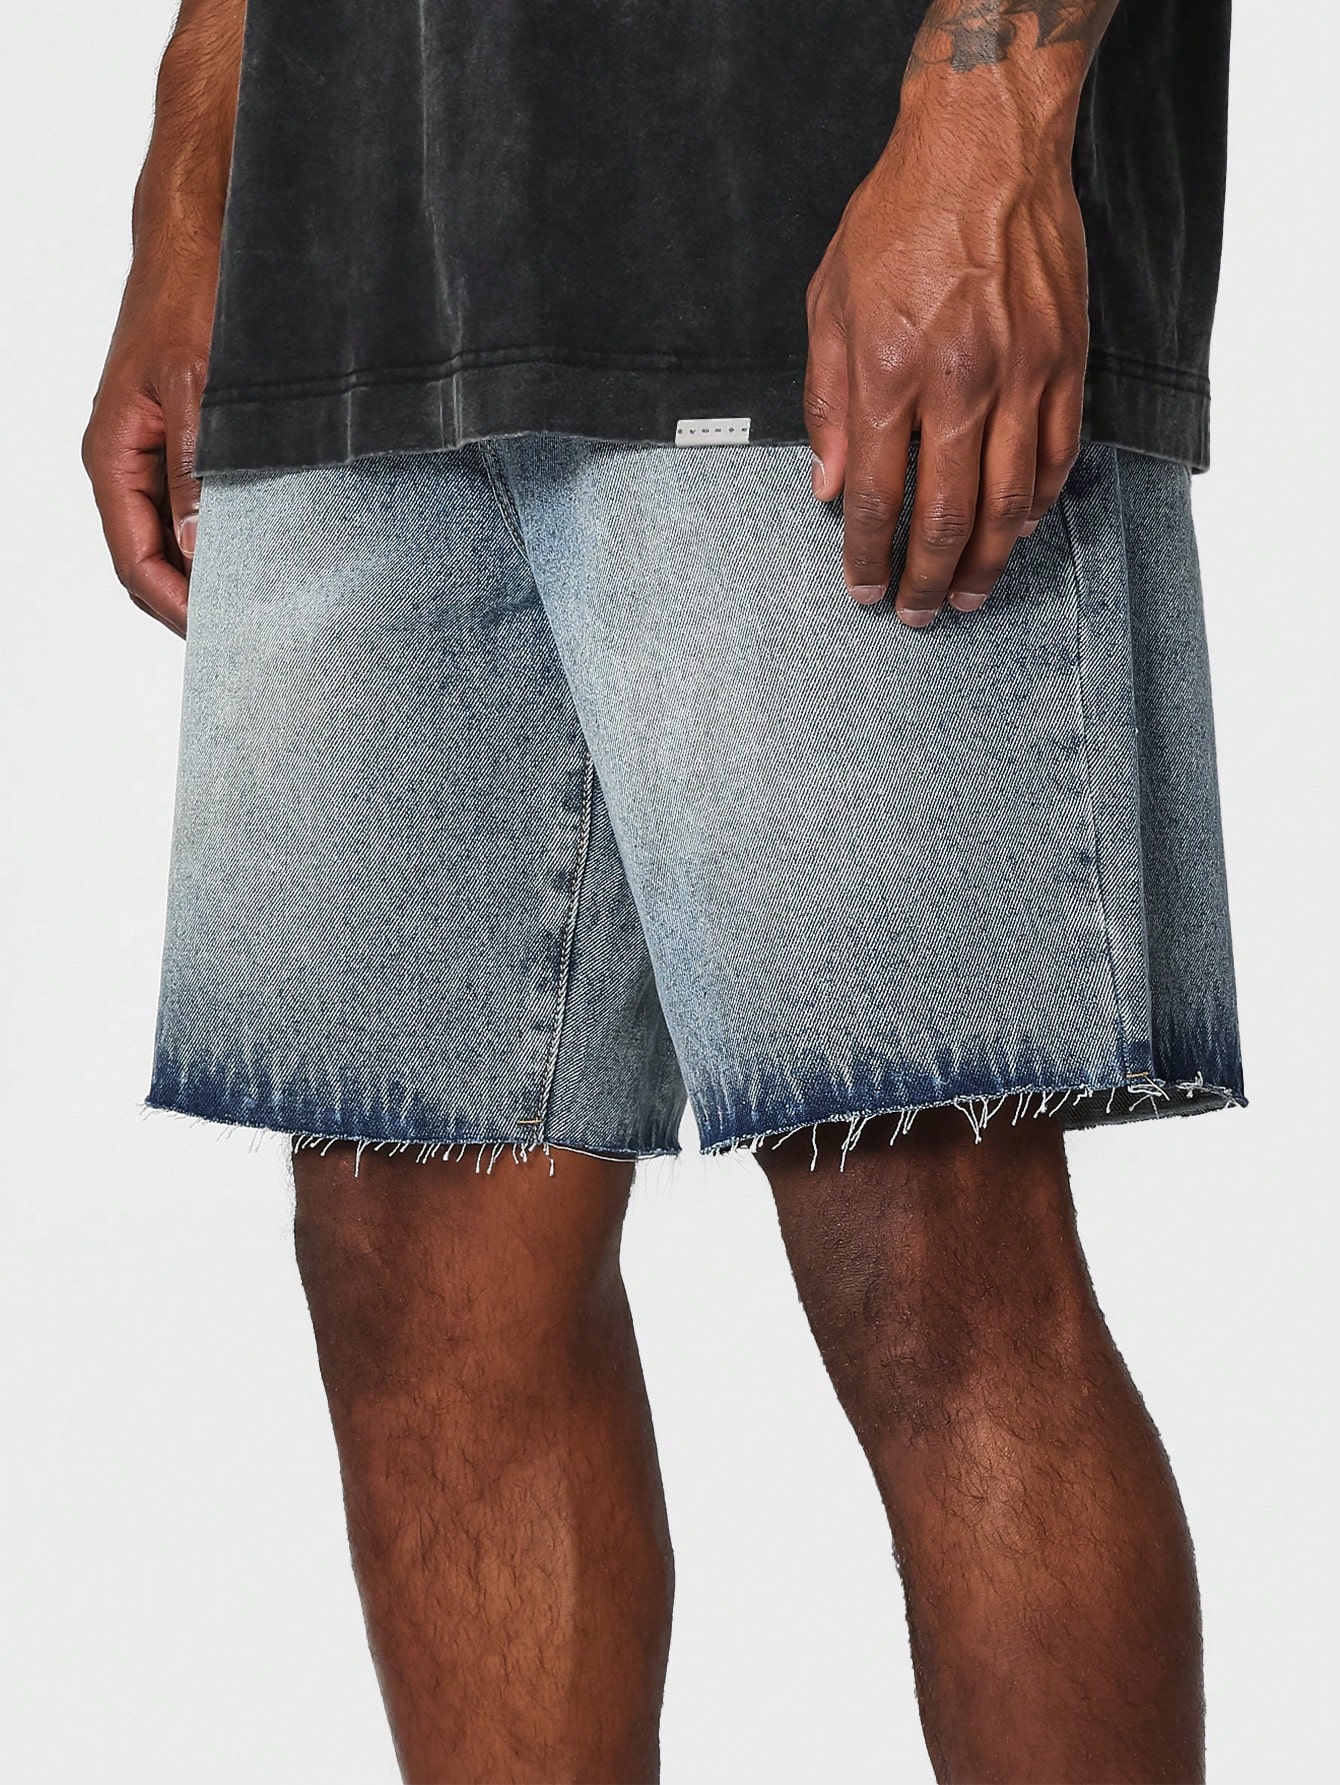 SUMWON Джинсовые шорты с необработанными краями, синий new sexy women shorts low rise ripped denim open crotch hole denim shorts jeans nightclub